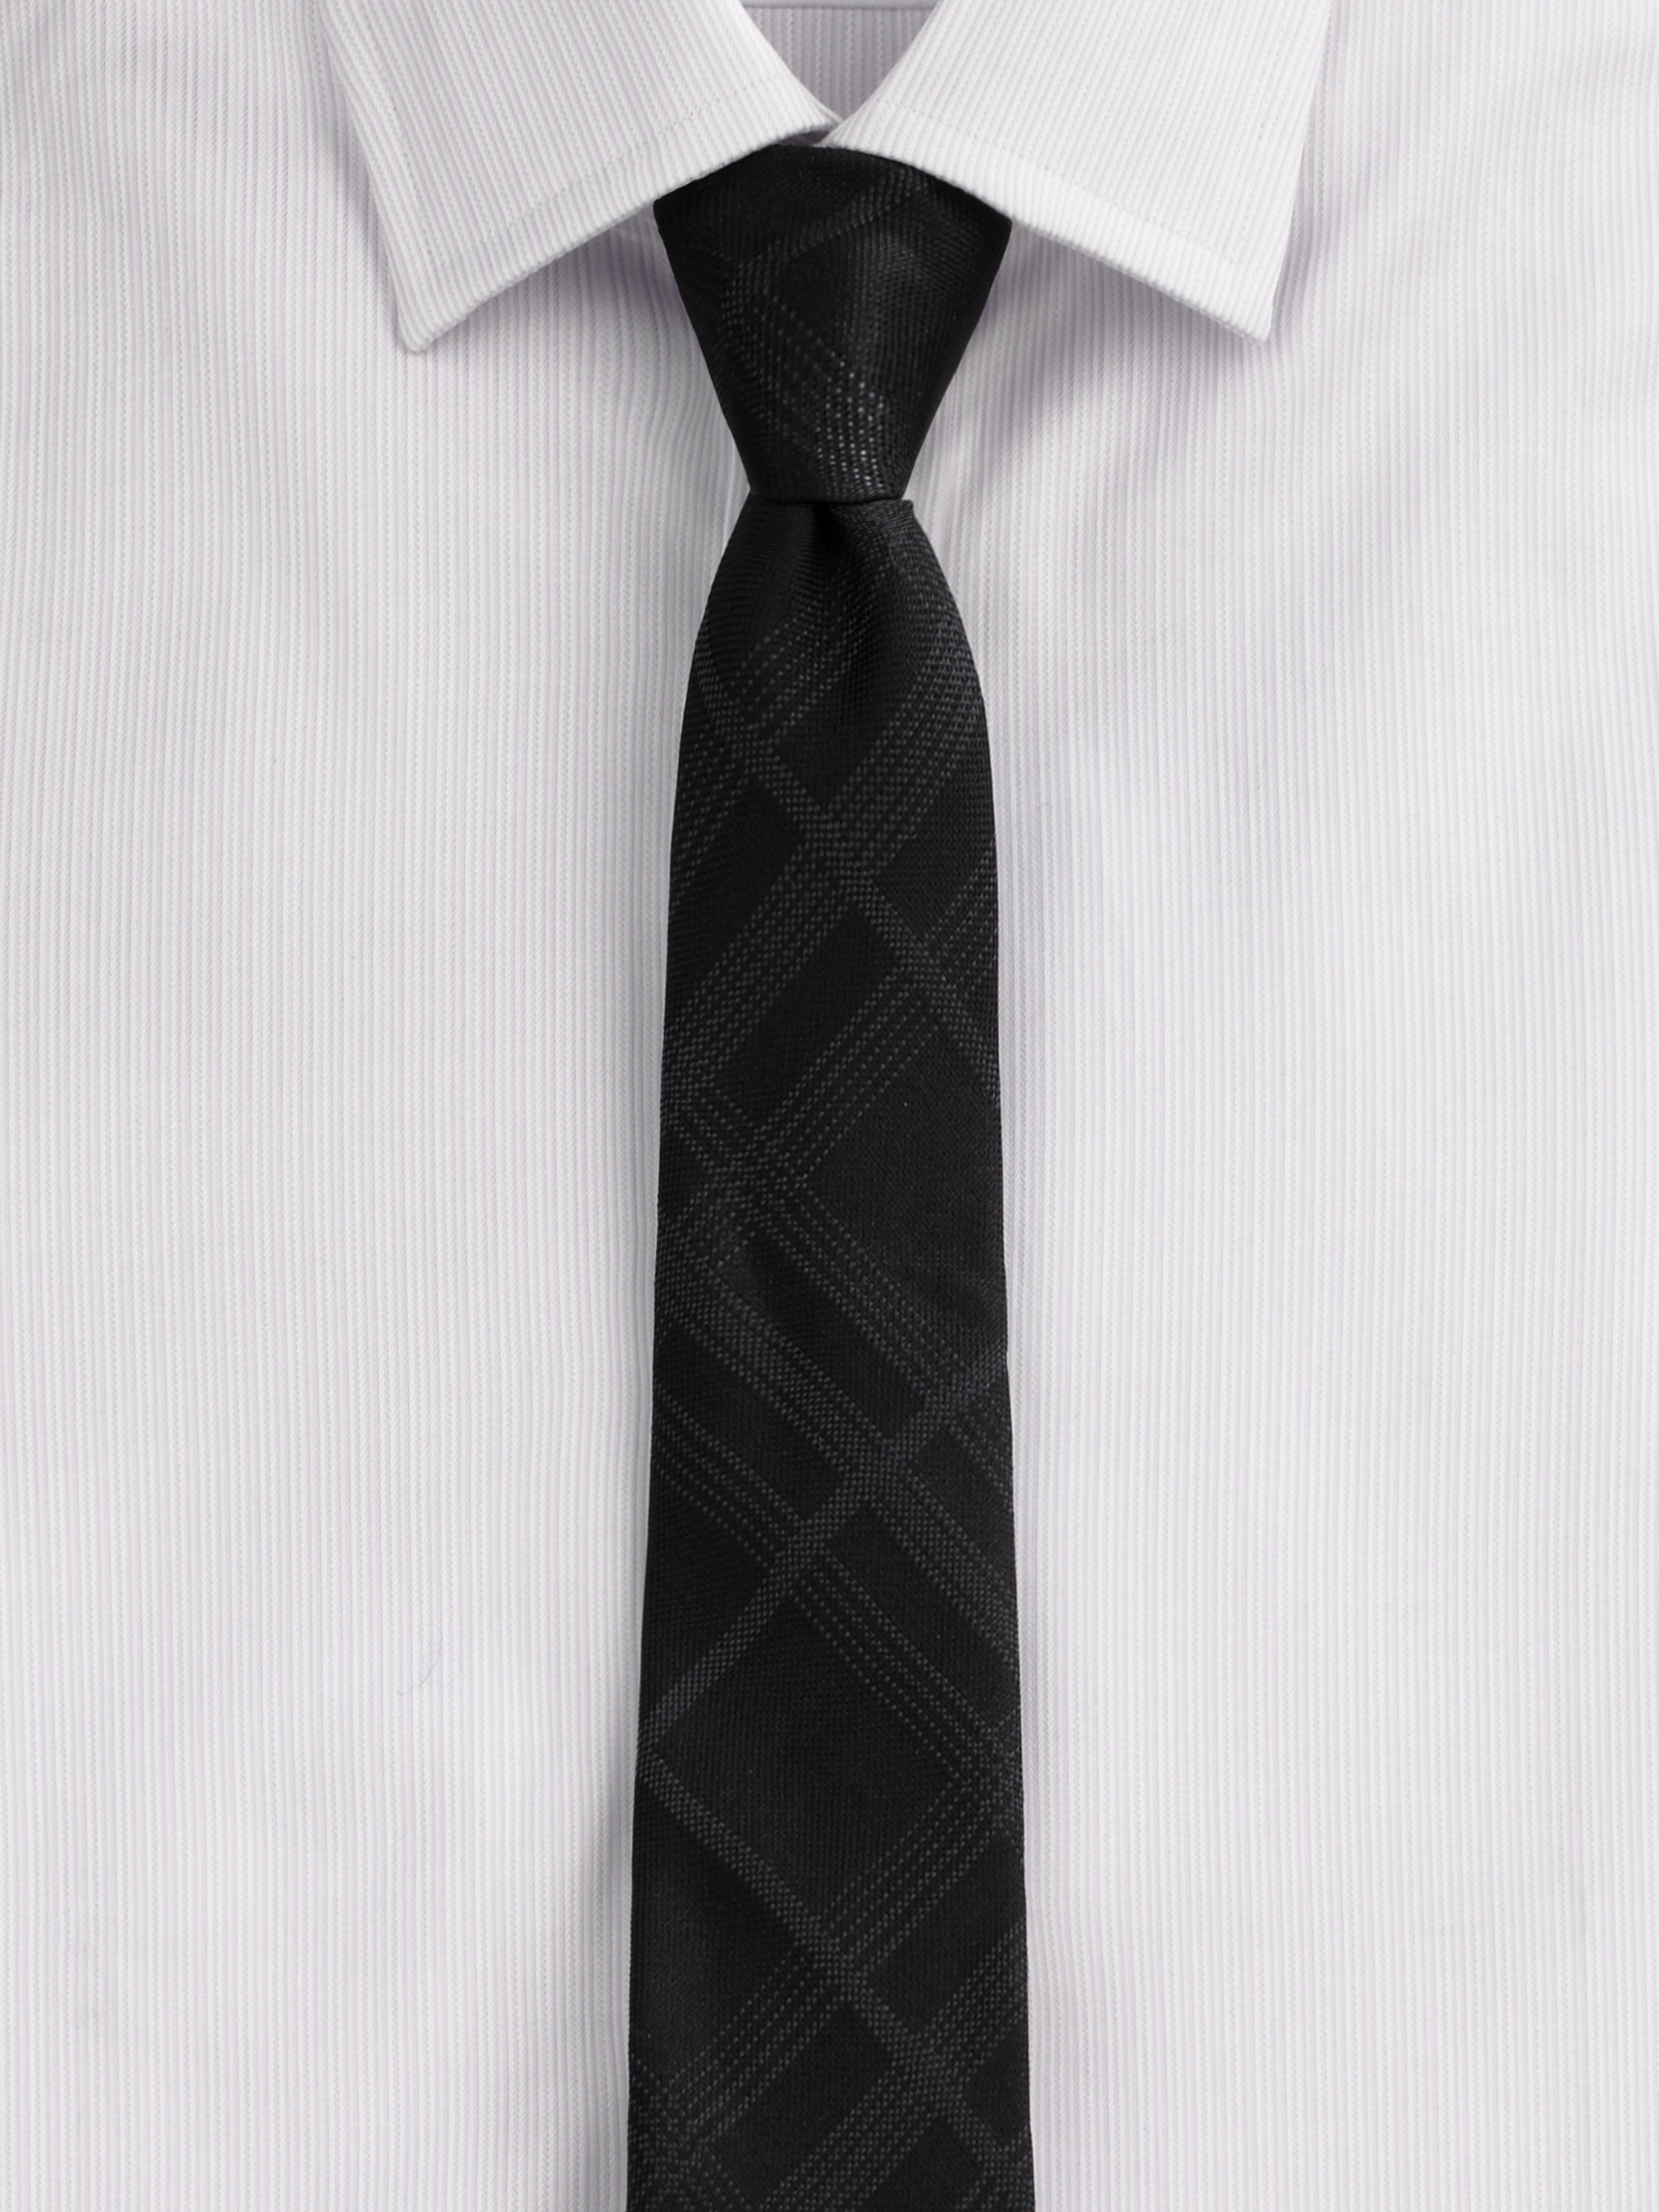 Мужской черный галстук. Галстук. Черный галстук. Галстук мужской. Чёрная рубашка с белым галстуком.